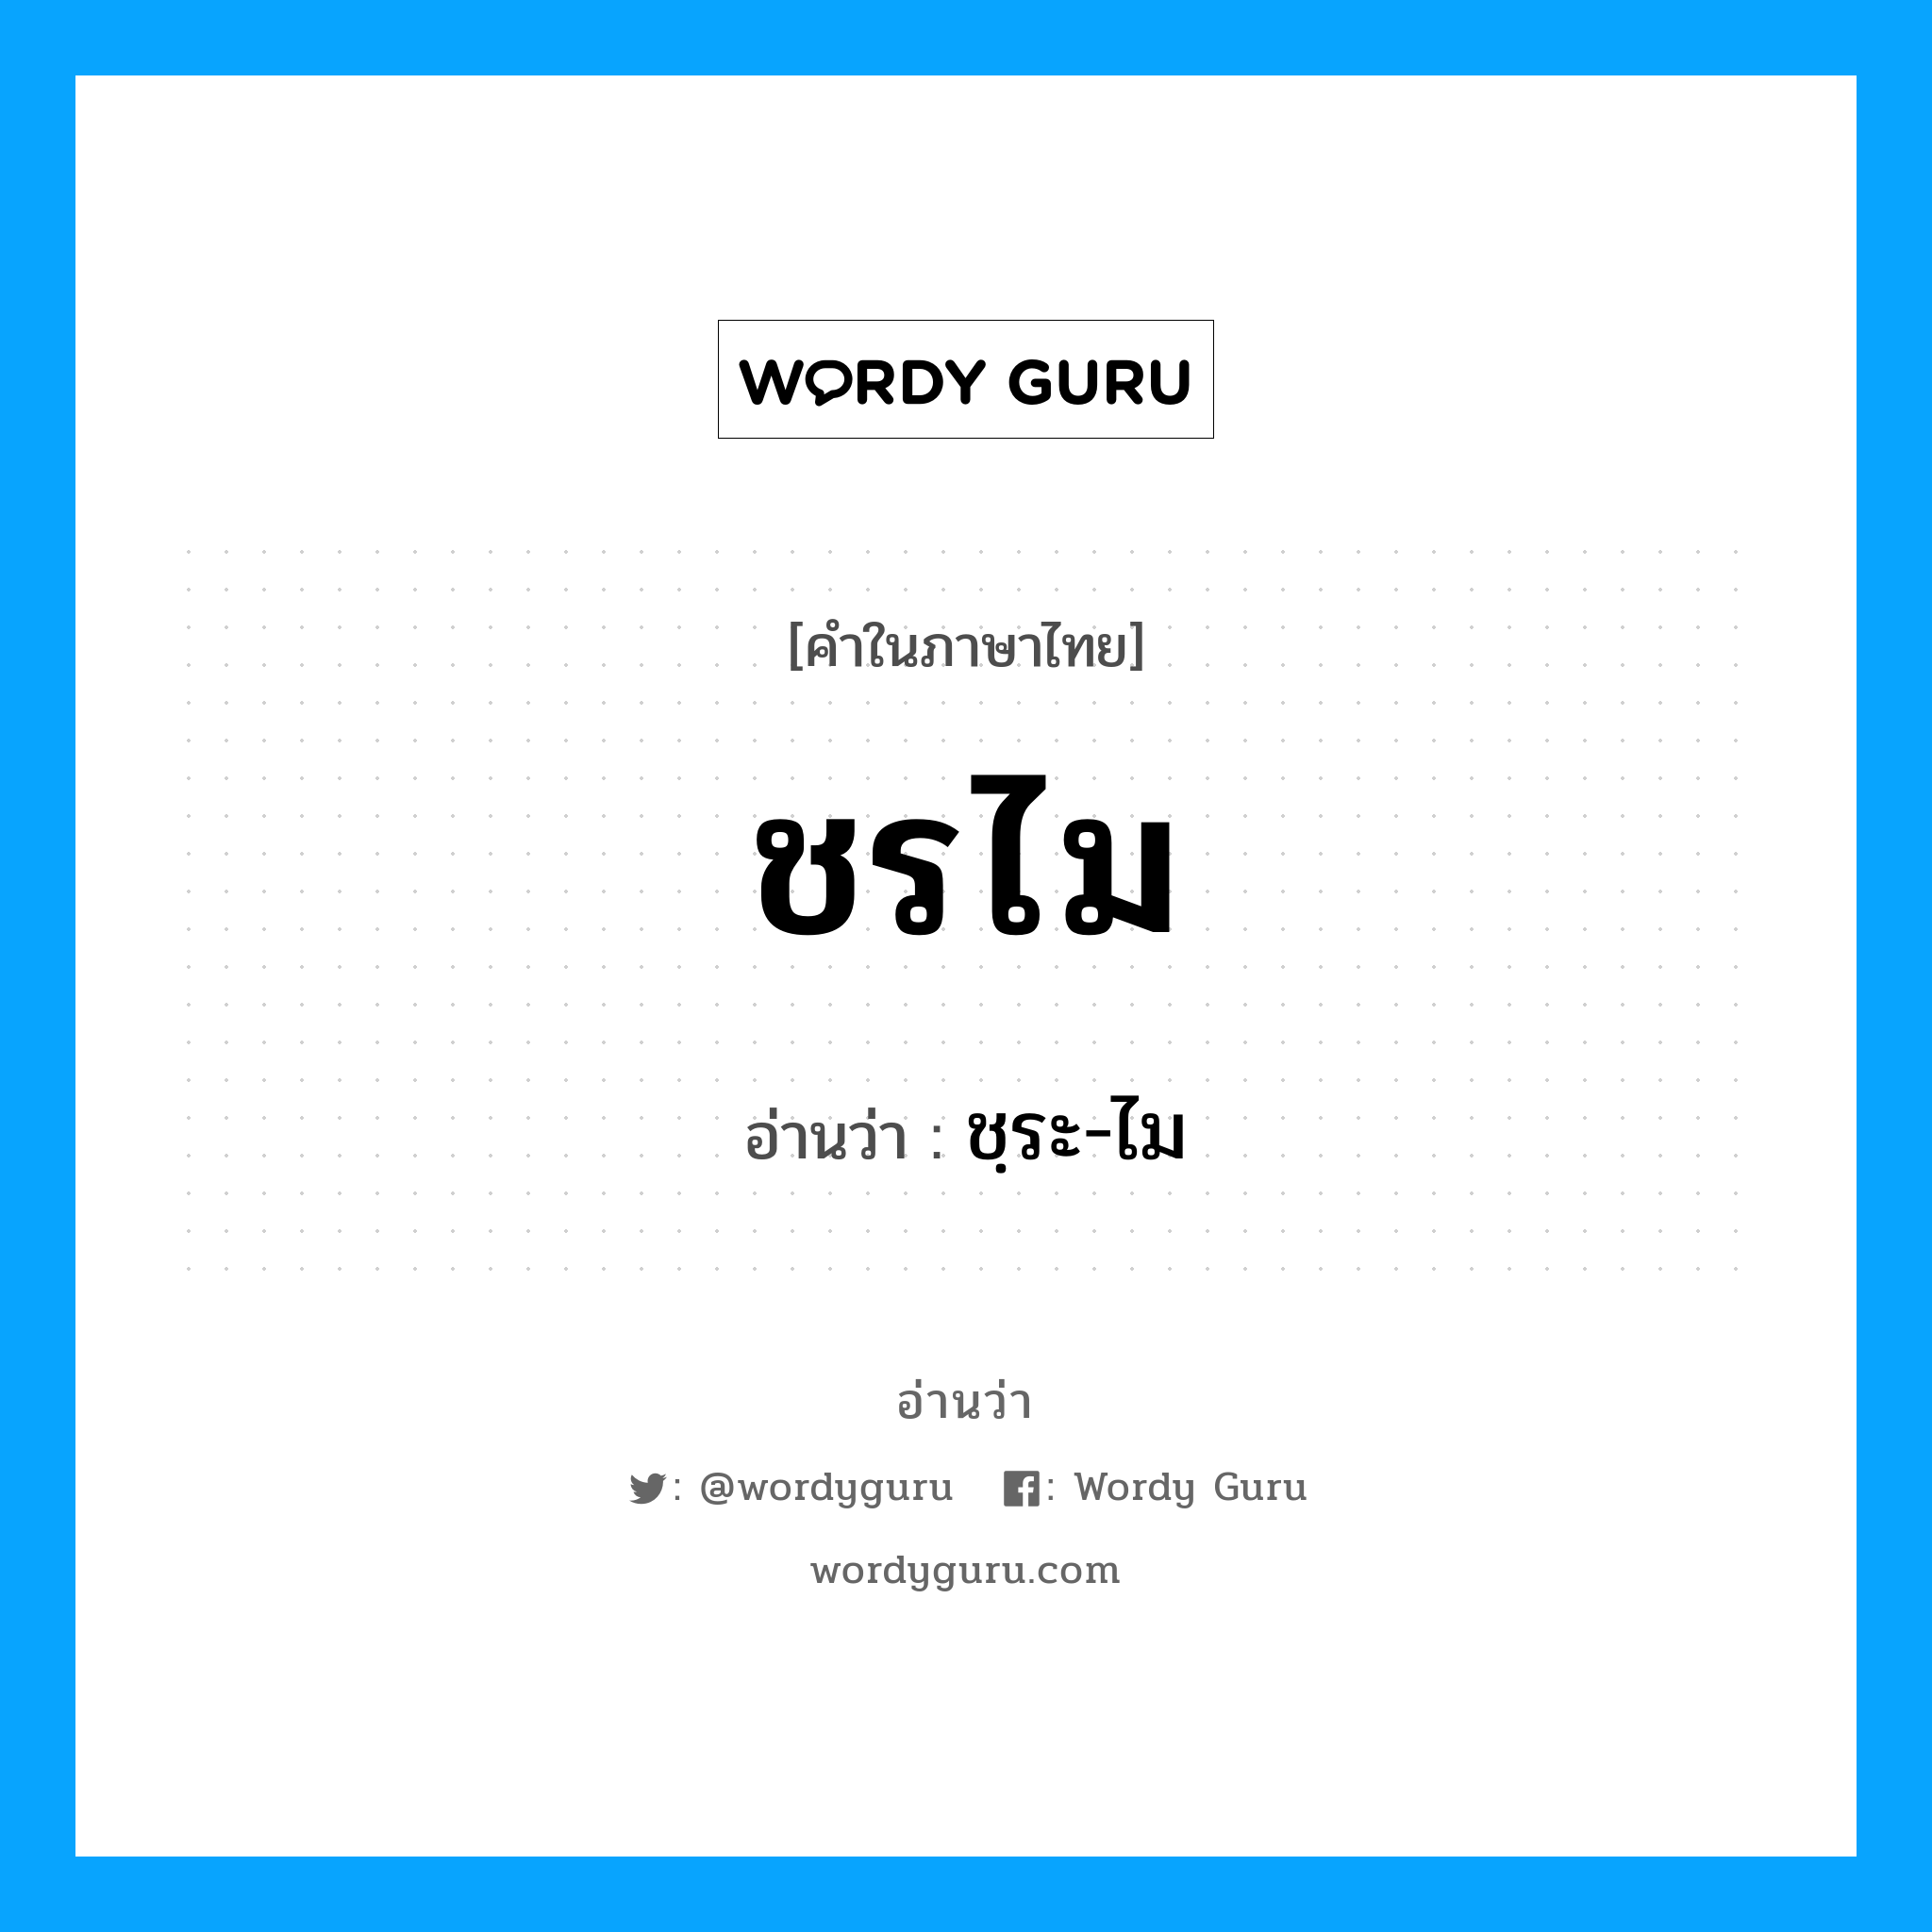 ชฺระ-ไม เป็นคำอ่านของคำไหน?, คำในภาษาไทย ชฺระ-ไม อ่านว่า ชรไม